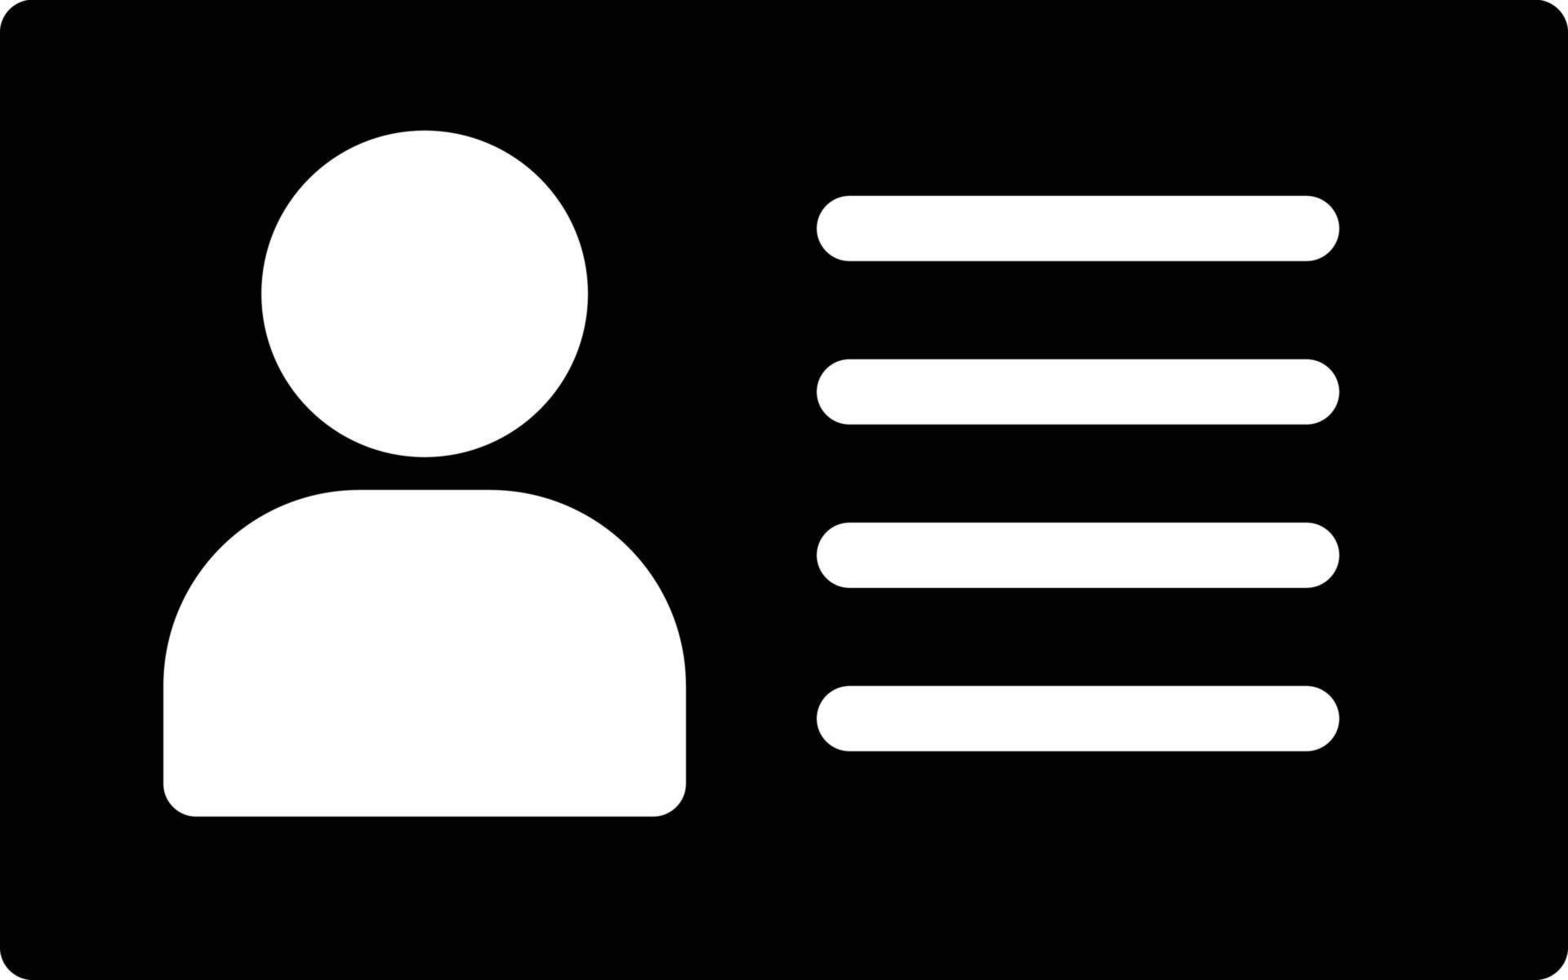 illustrazione vettoriale della carta d'identità su uno sfondo. simboli di qualità premium. icone vettoriali per il concetto e la progettazione grafica.